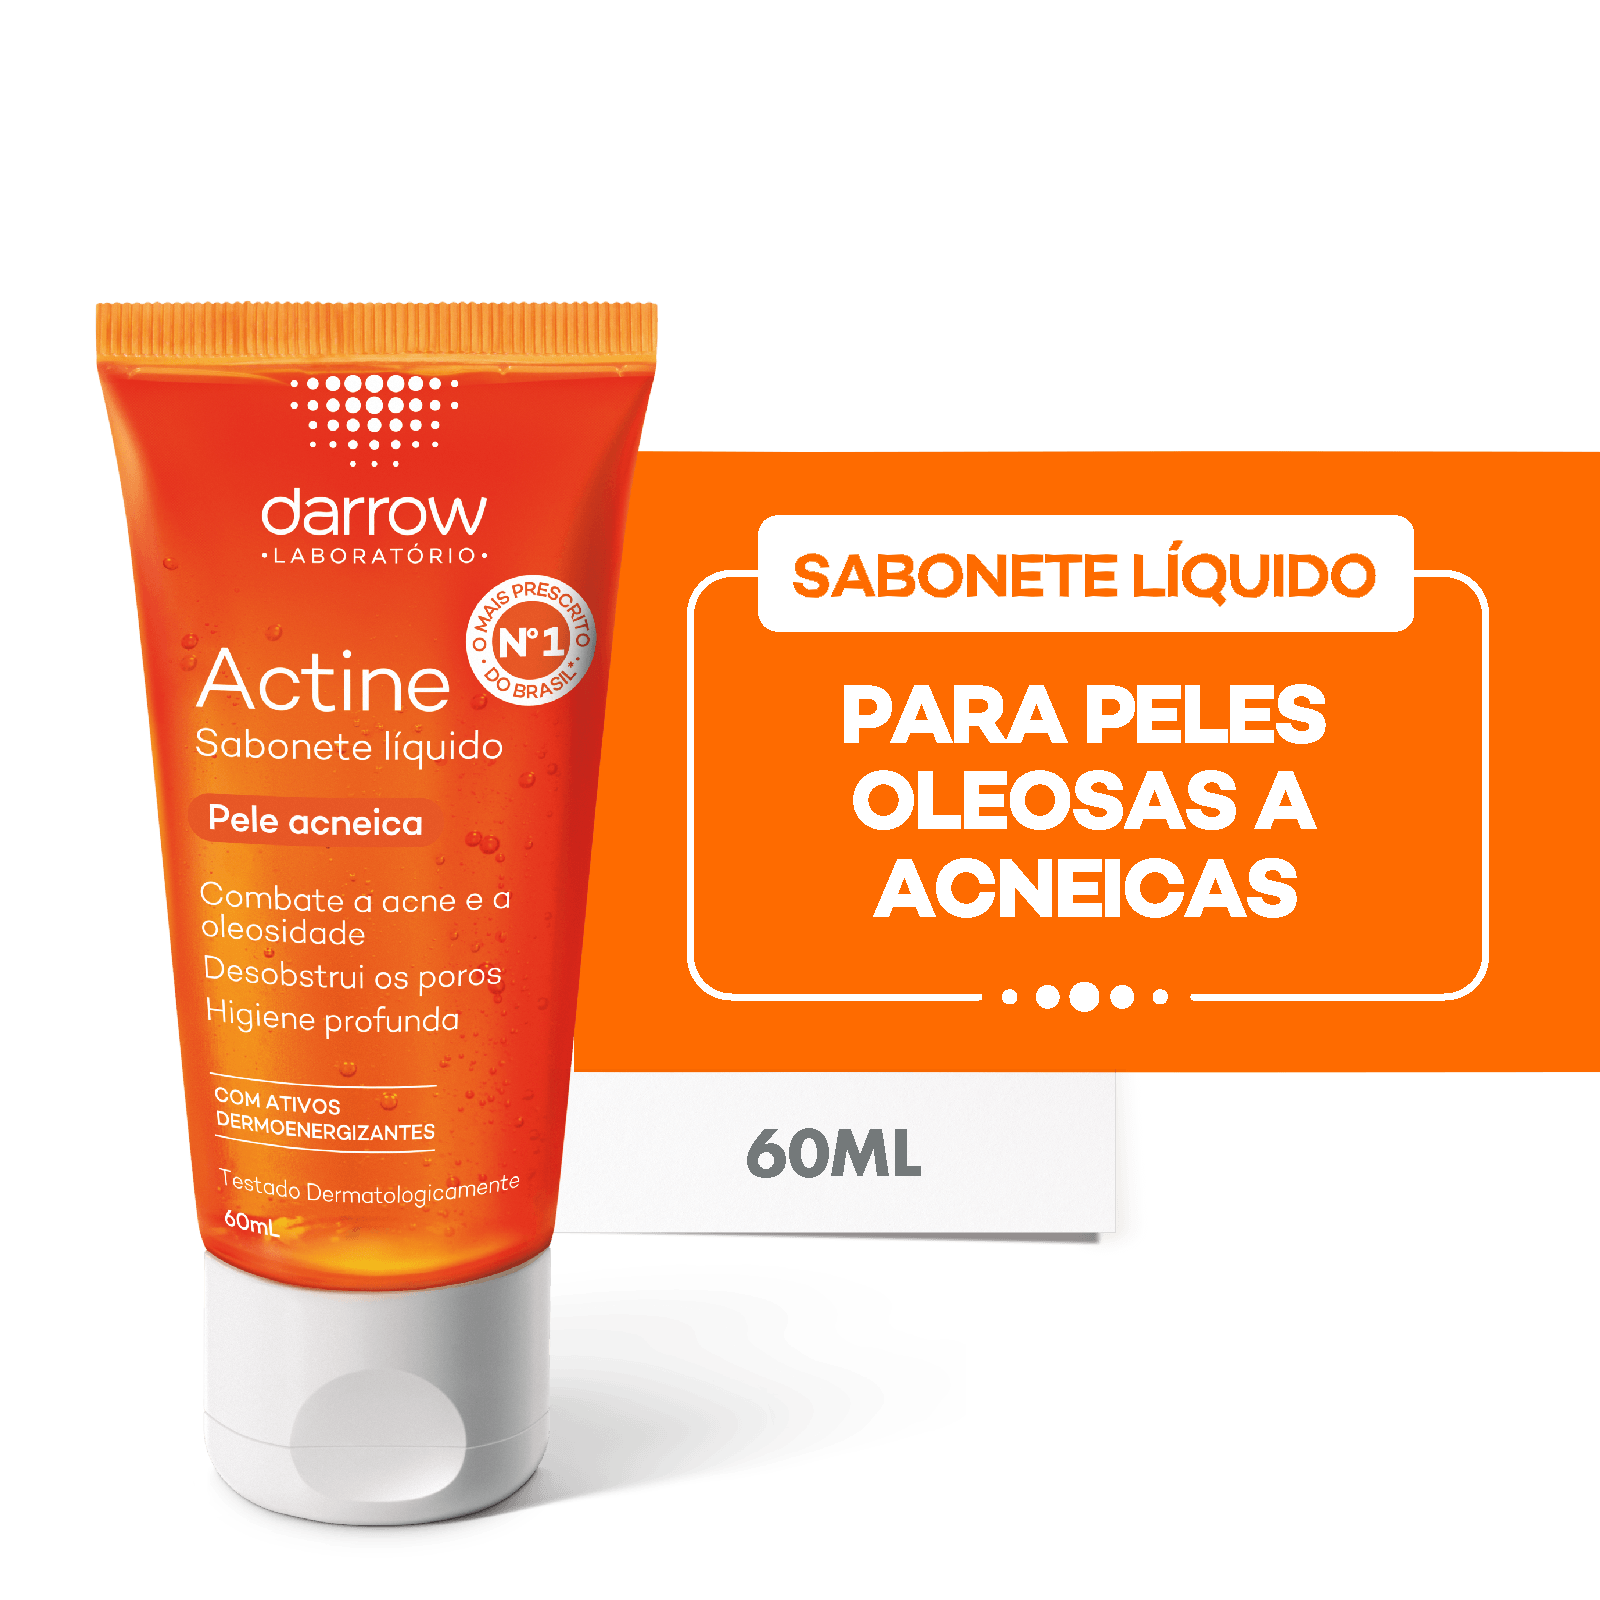 [Regional] Actine Sabonete Líquido, pele oleosa a acneica, Darrow - 60ml